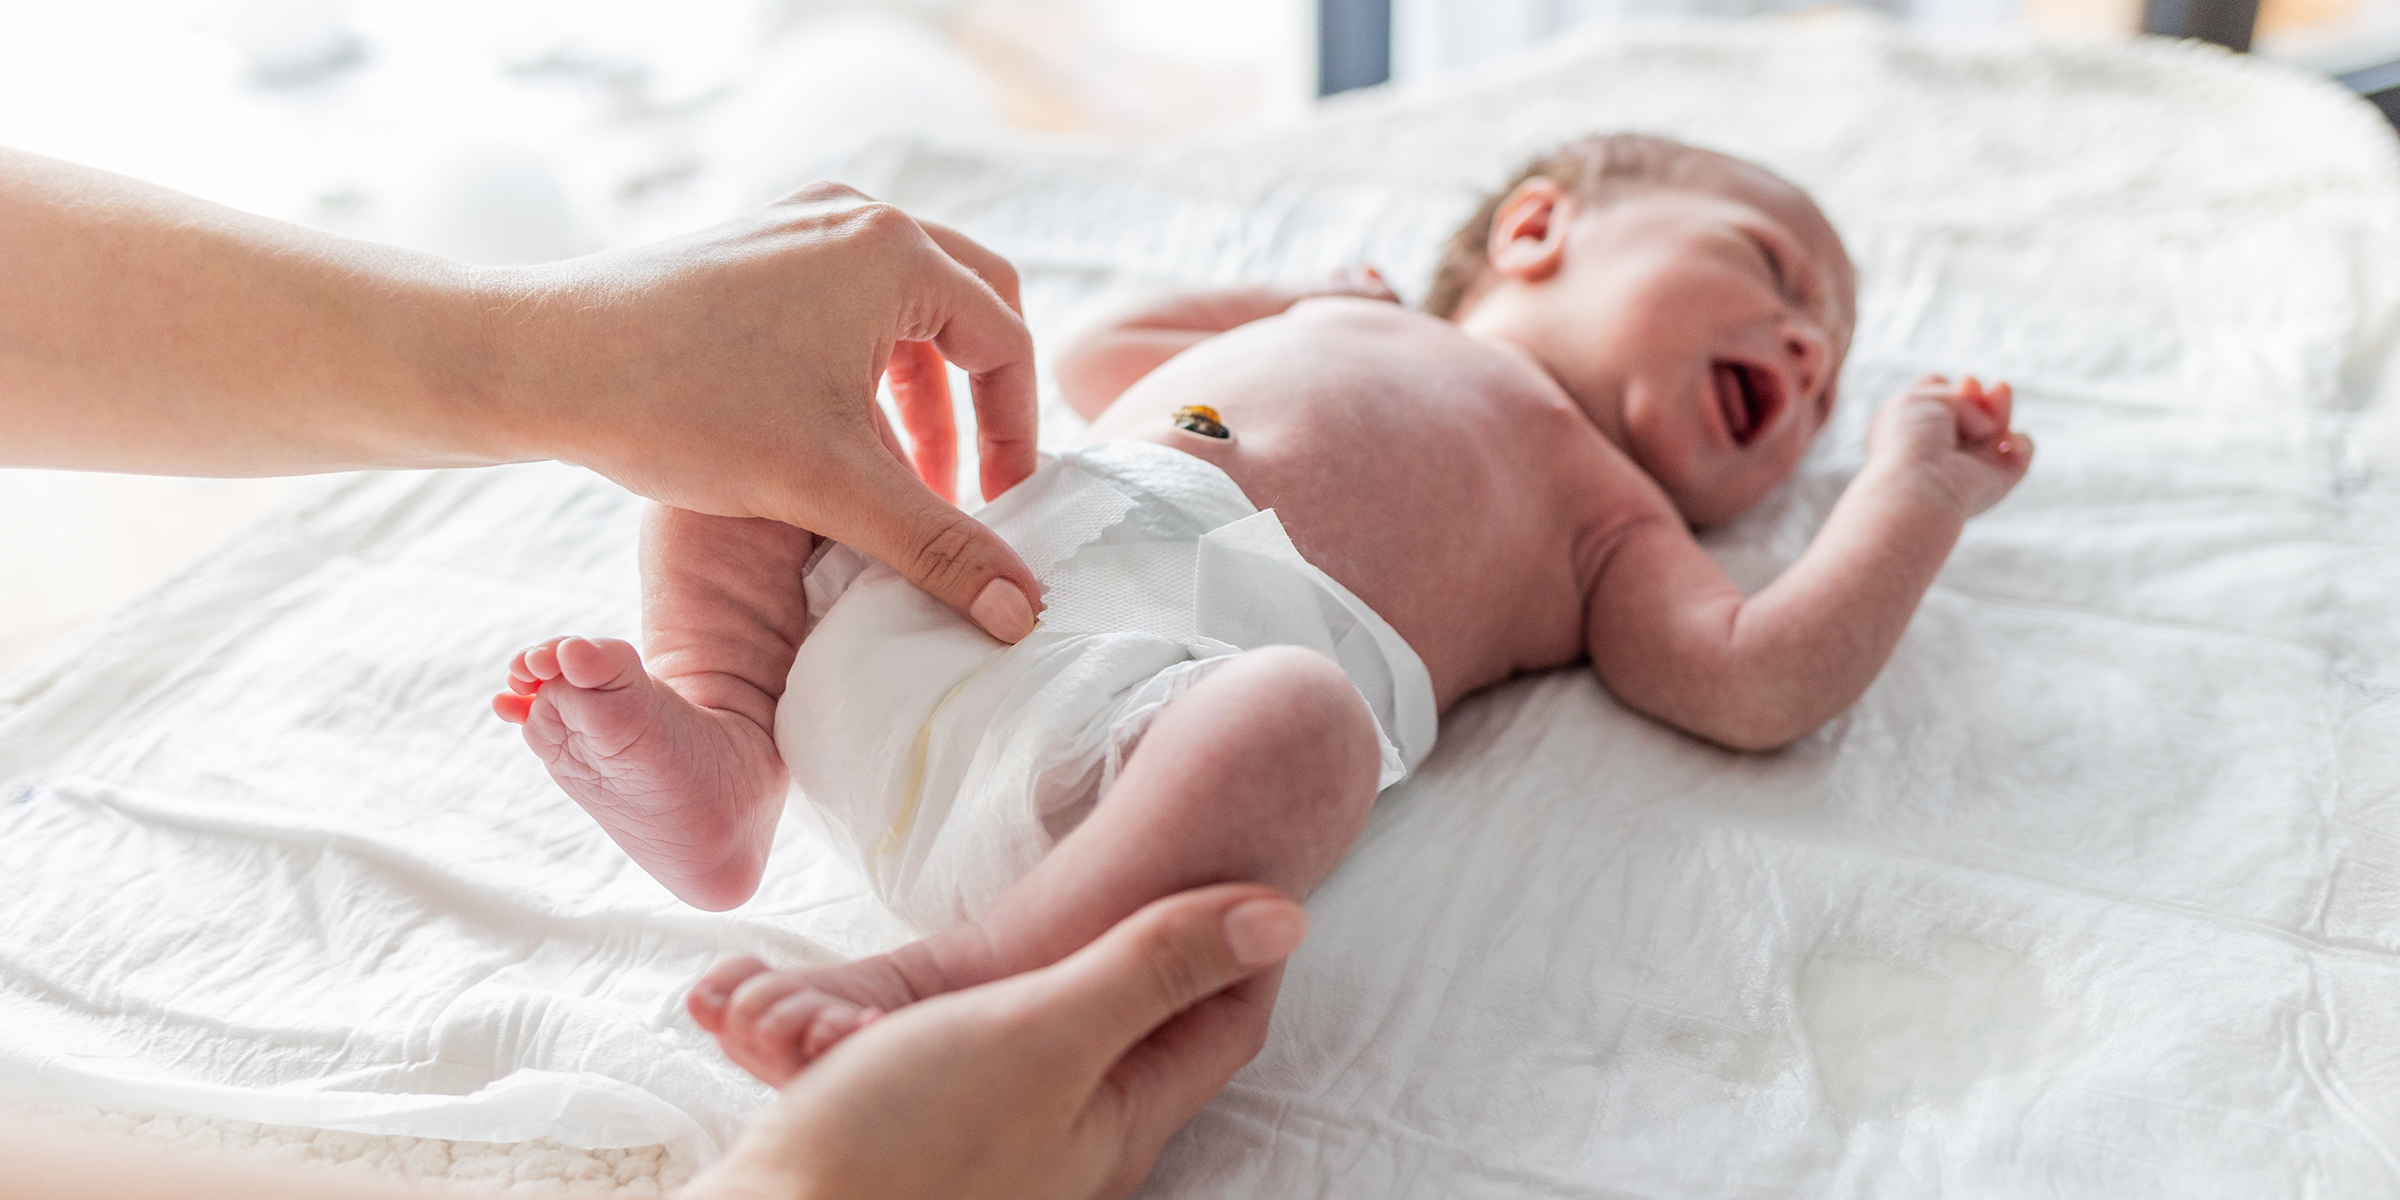 Une personne changeant la couche d'un bébé | Source : Shutterstock